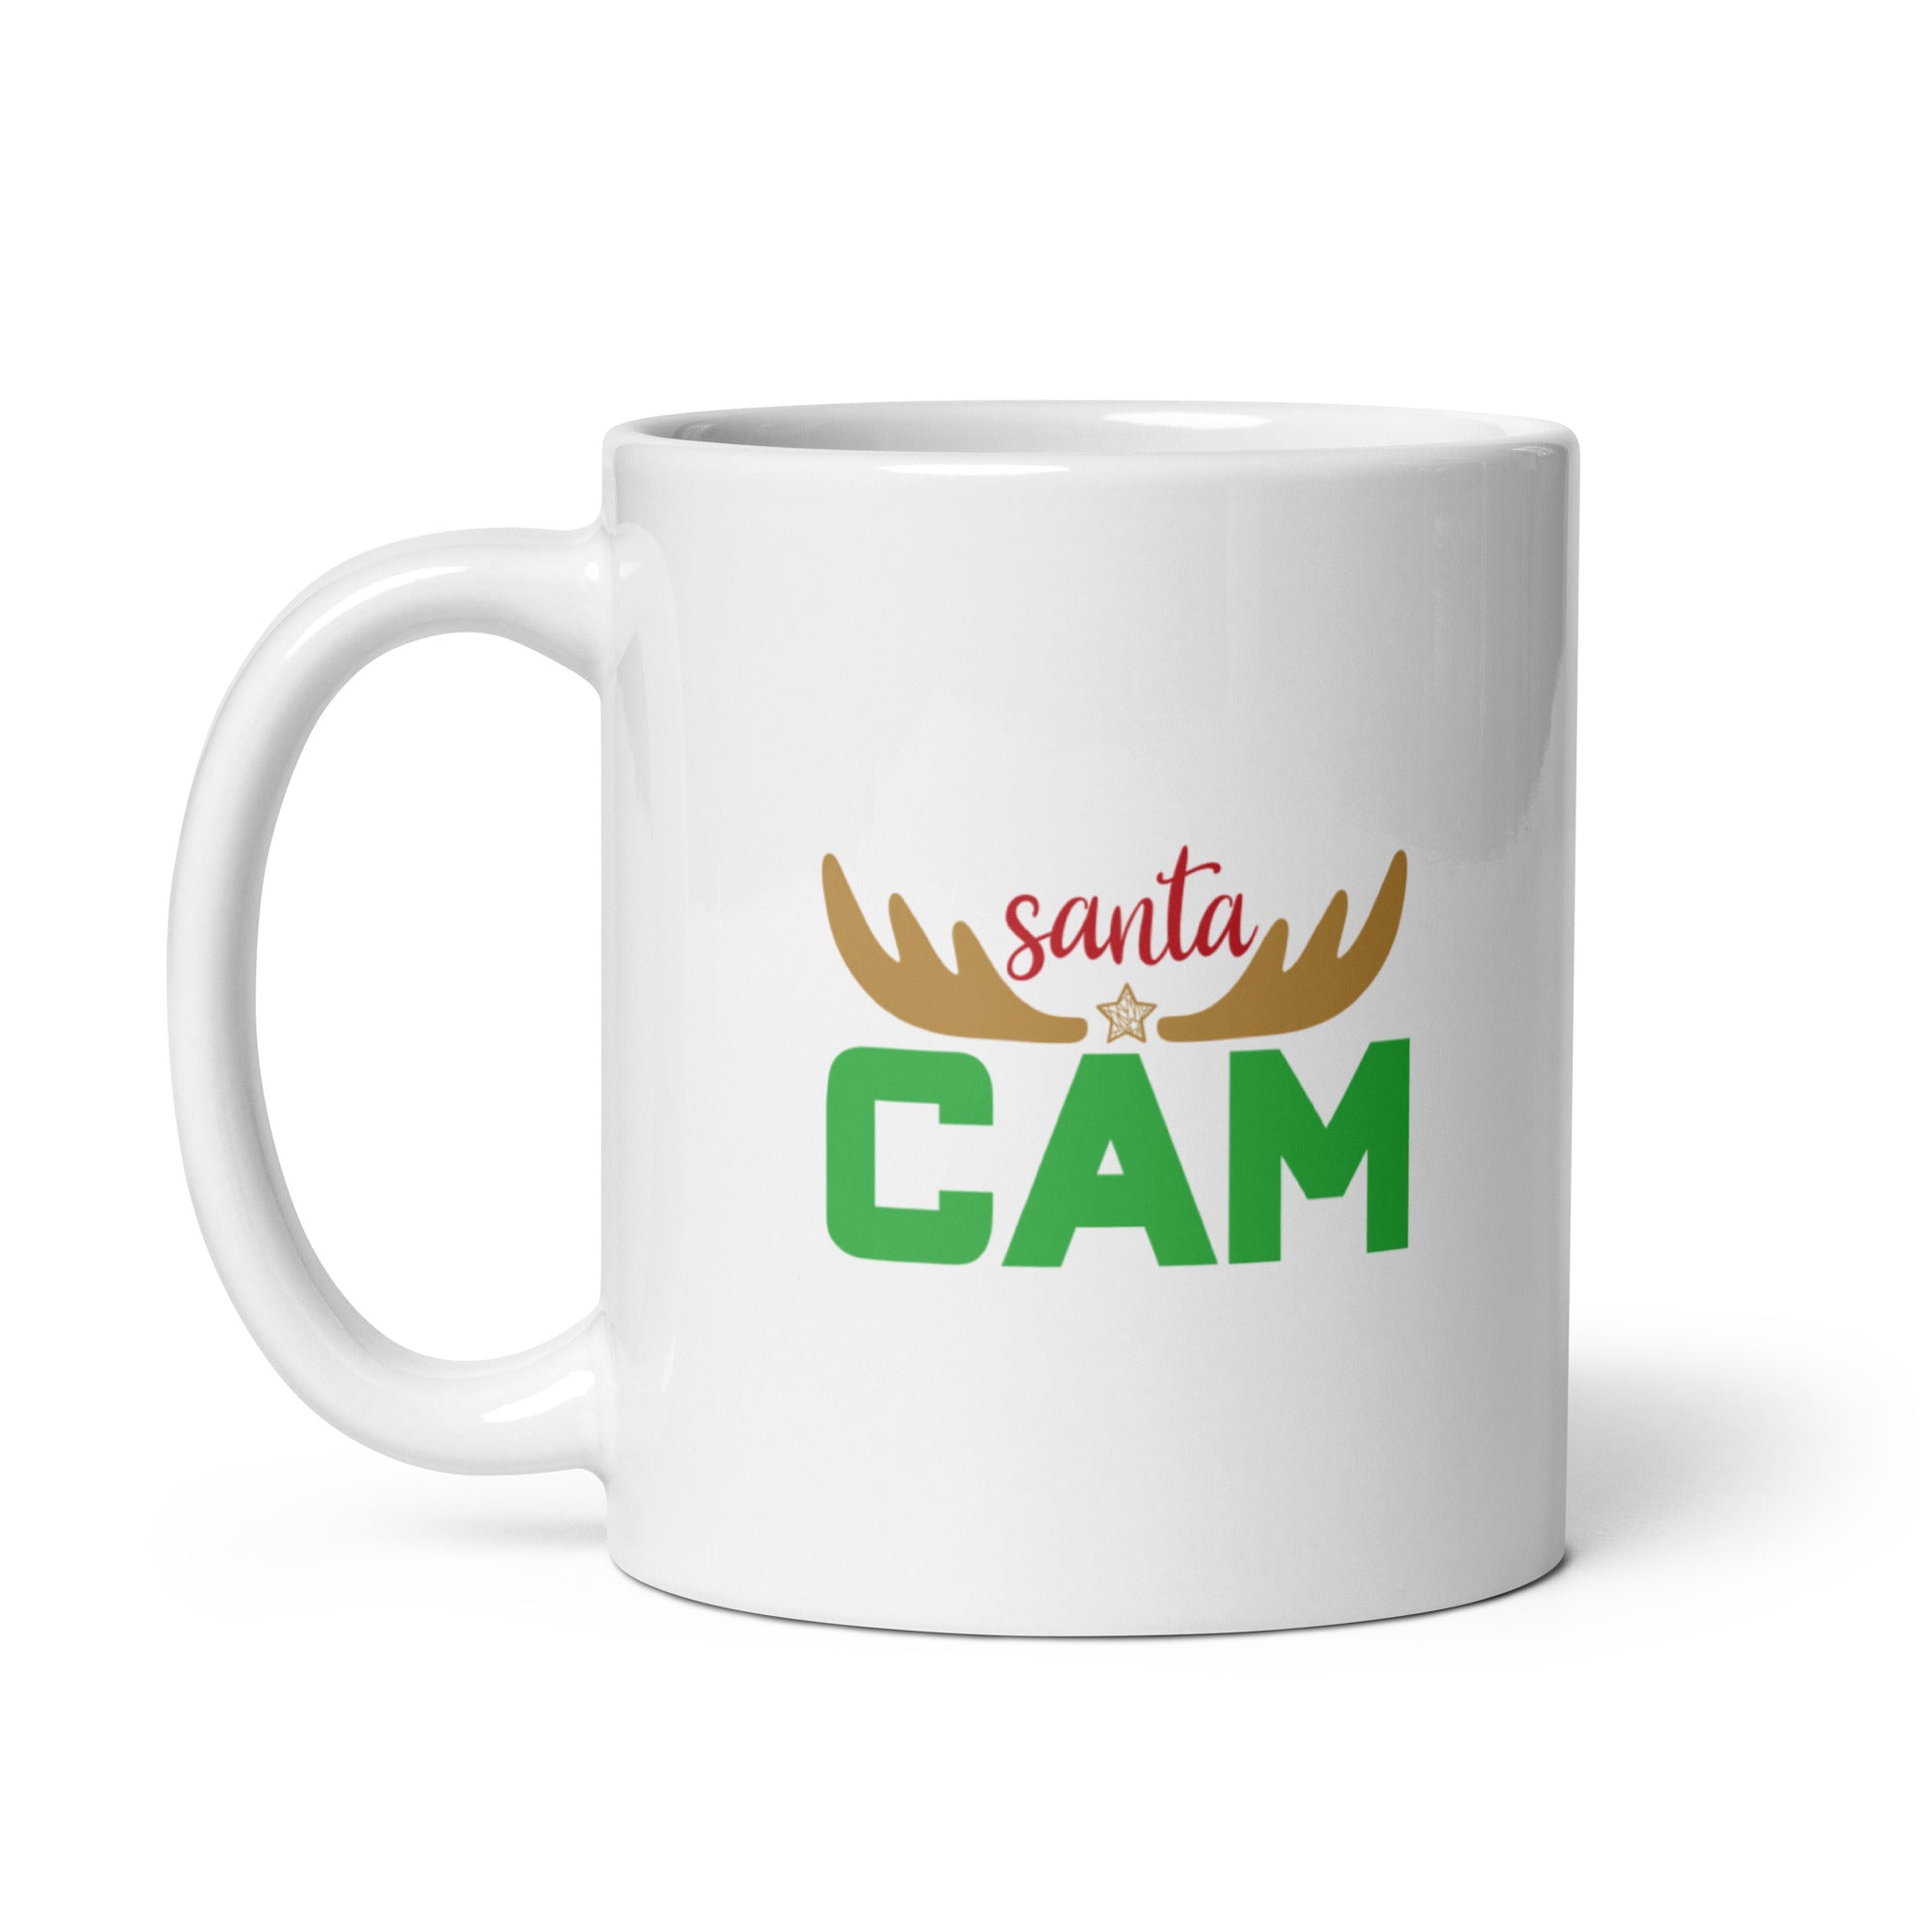 Santa Cam - White glossy mug